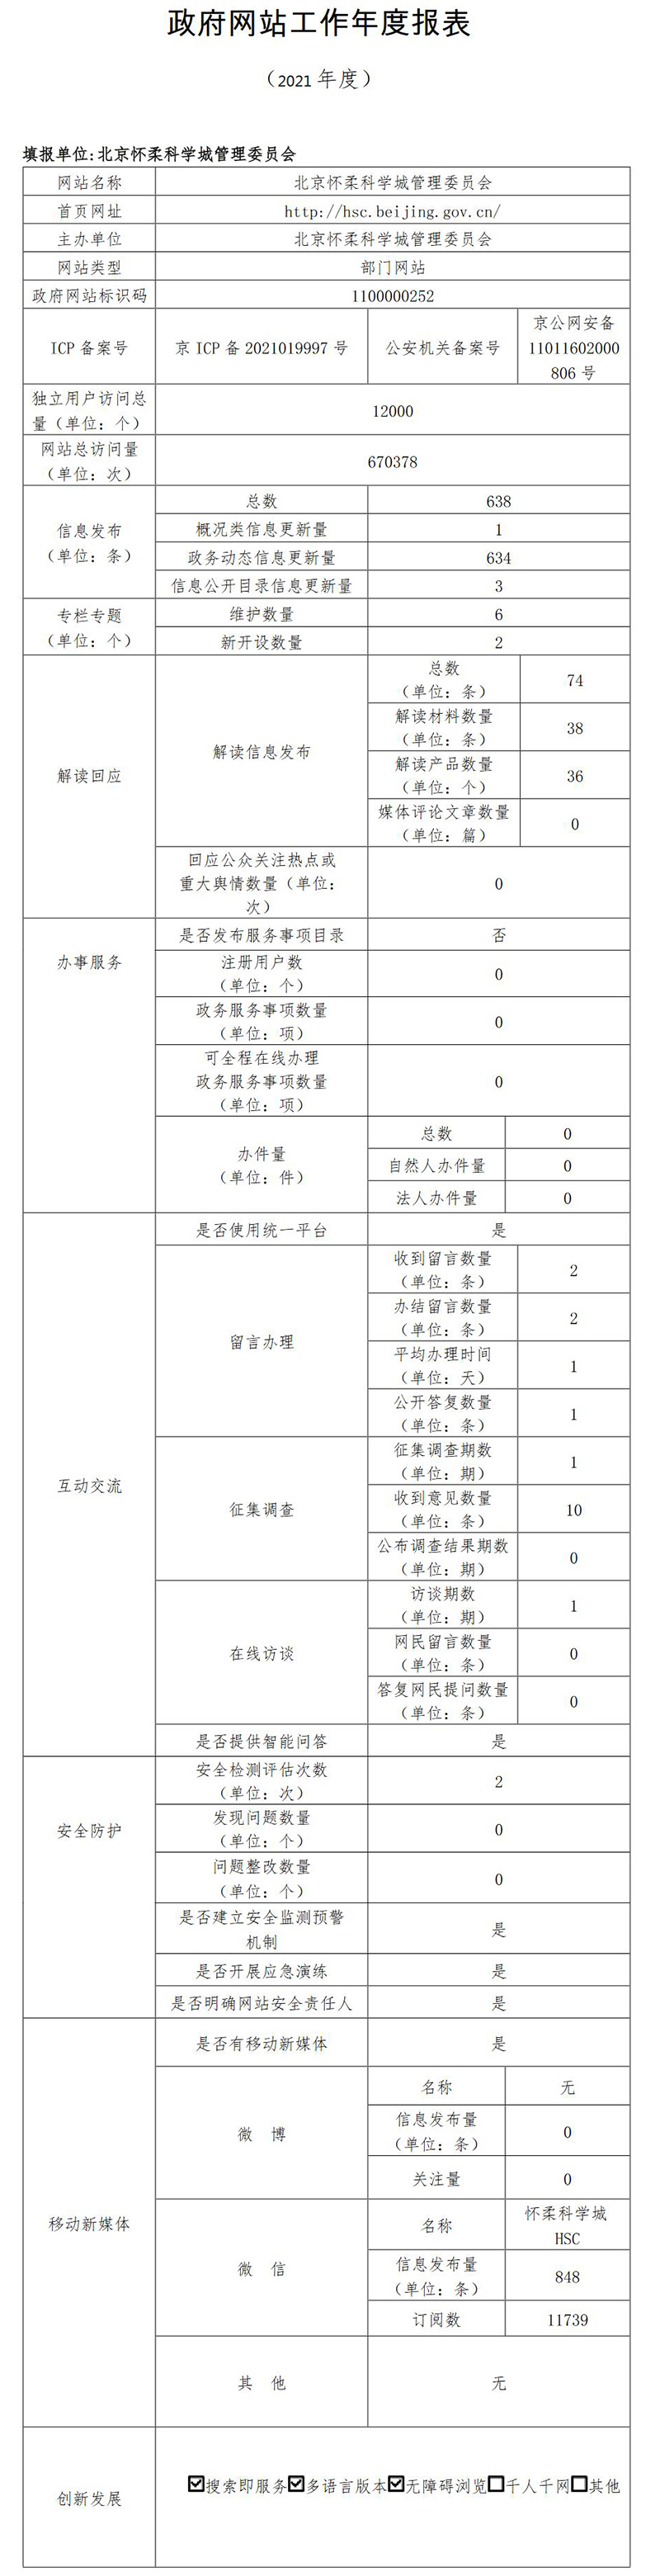 北京懷柔科學城管理委員會2021年政府網站年度工作報表